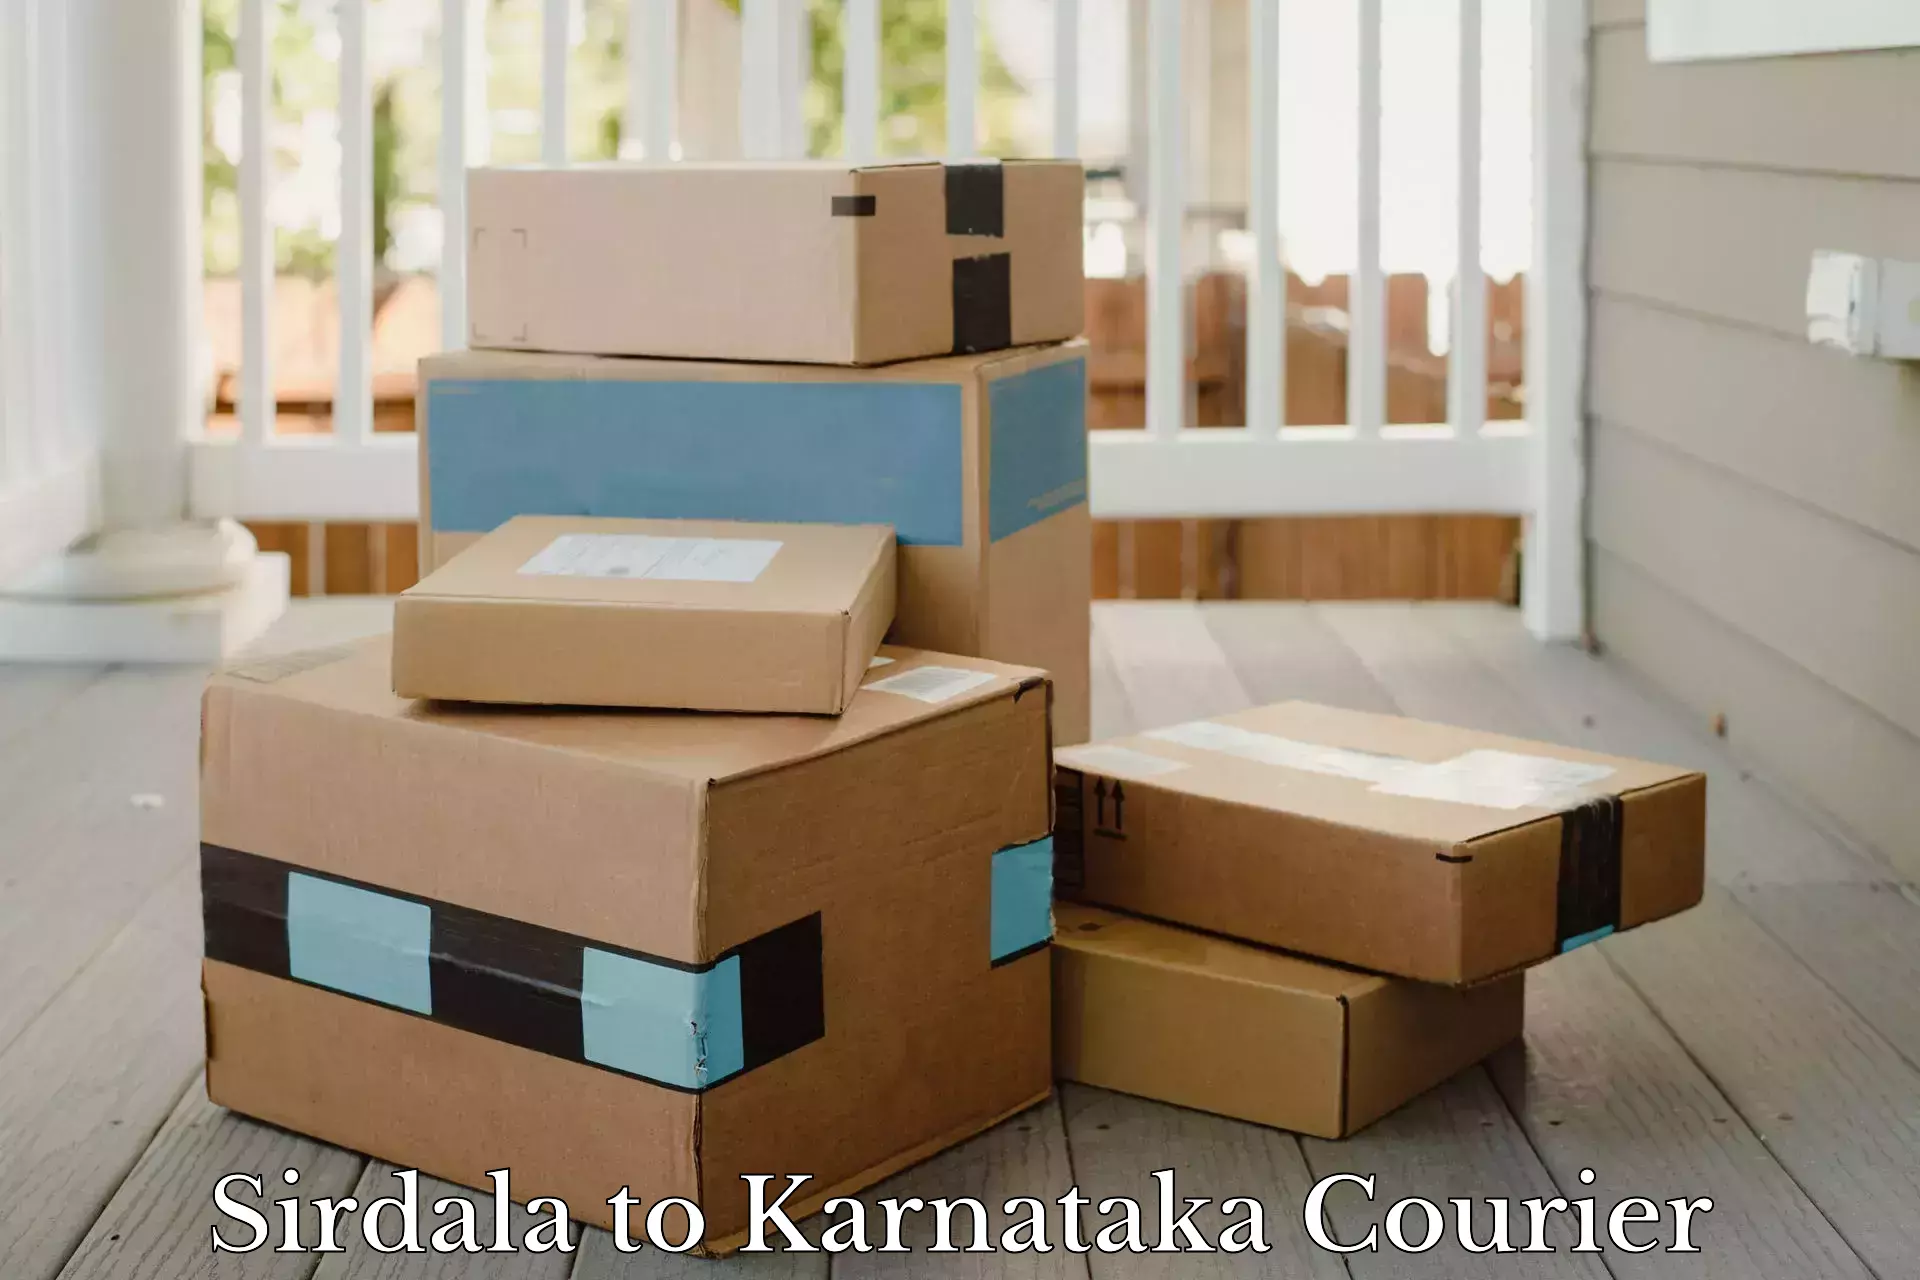 Large package courier Sirdala to Karnataka